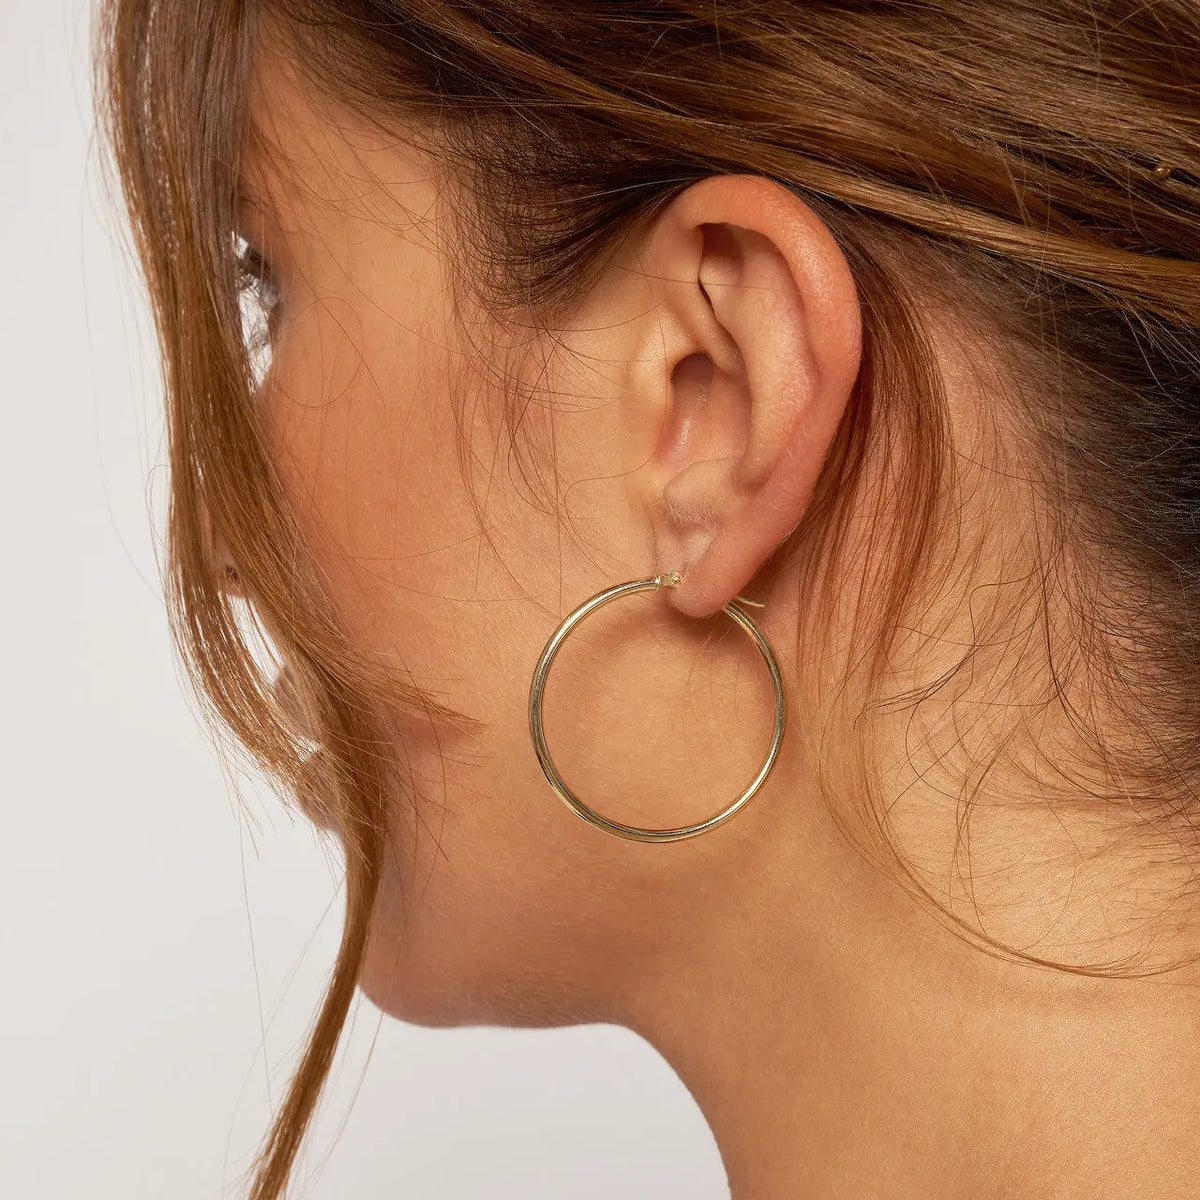 35mm hoop earrings